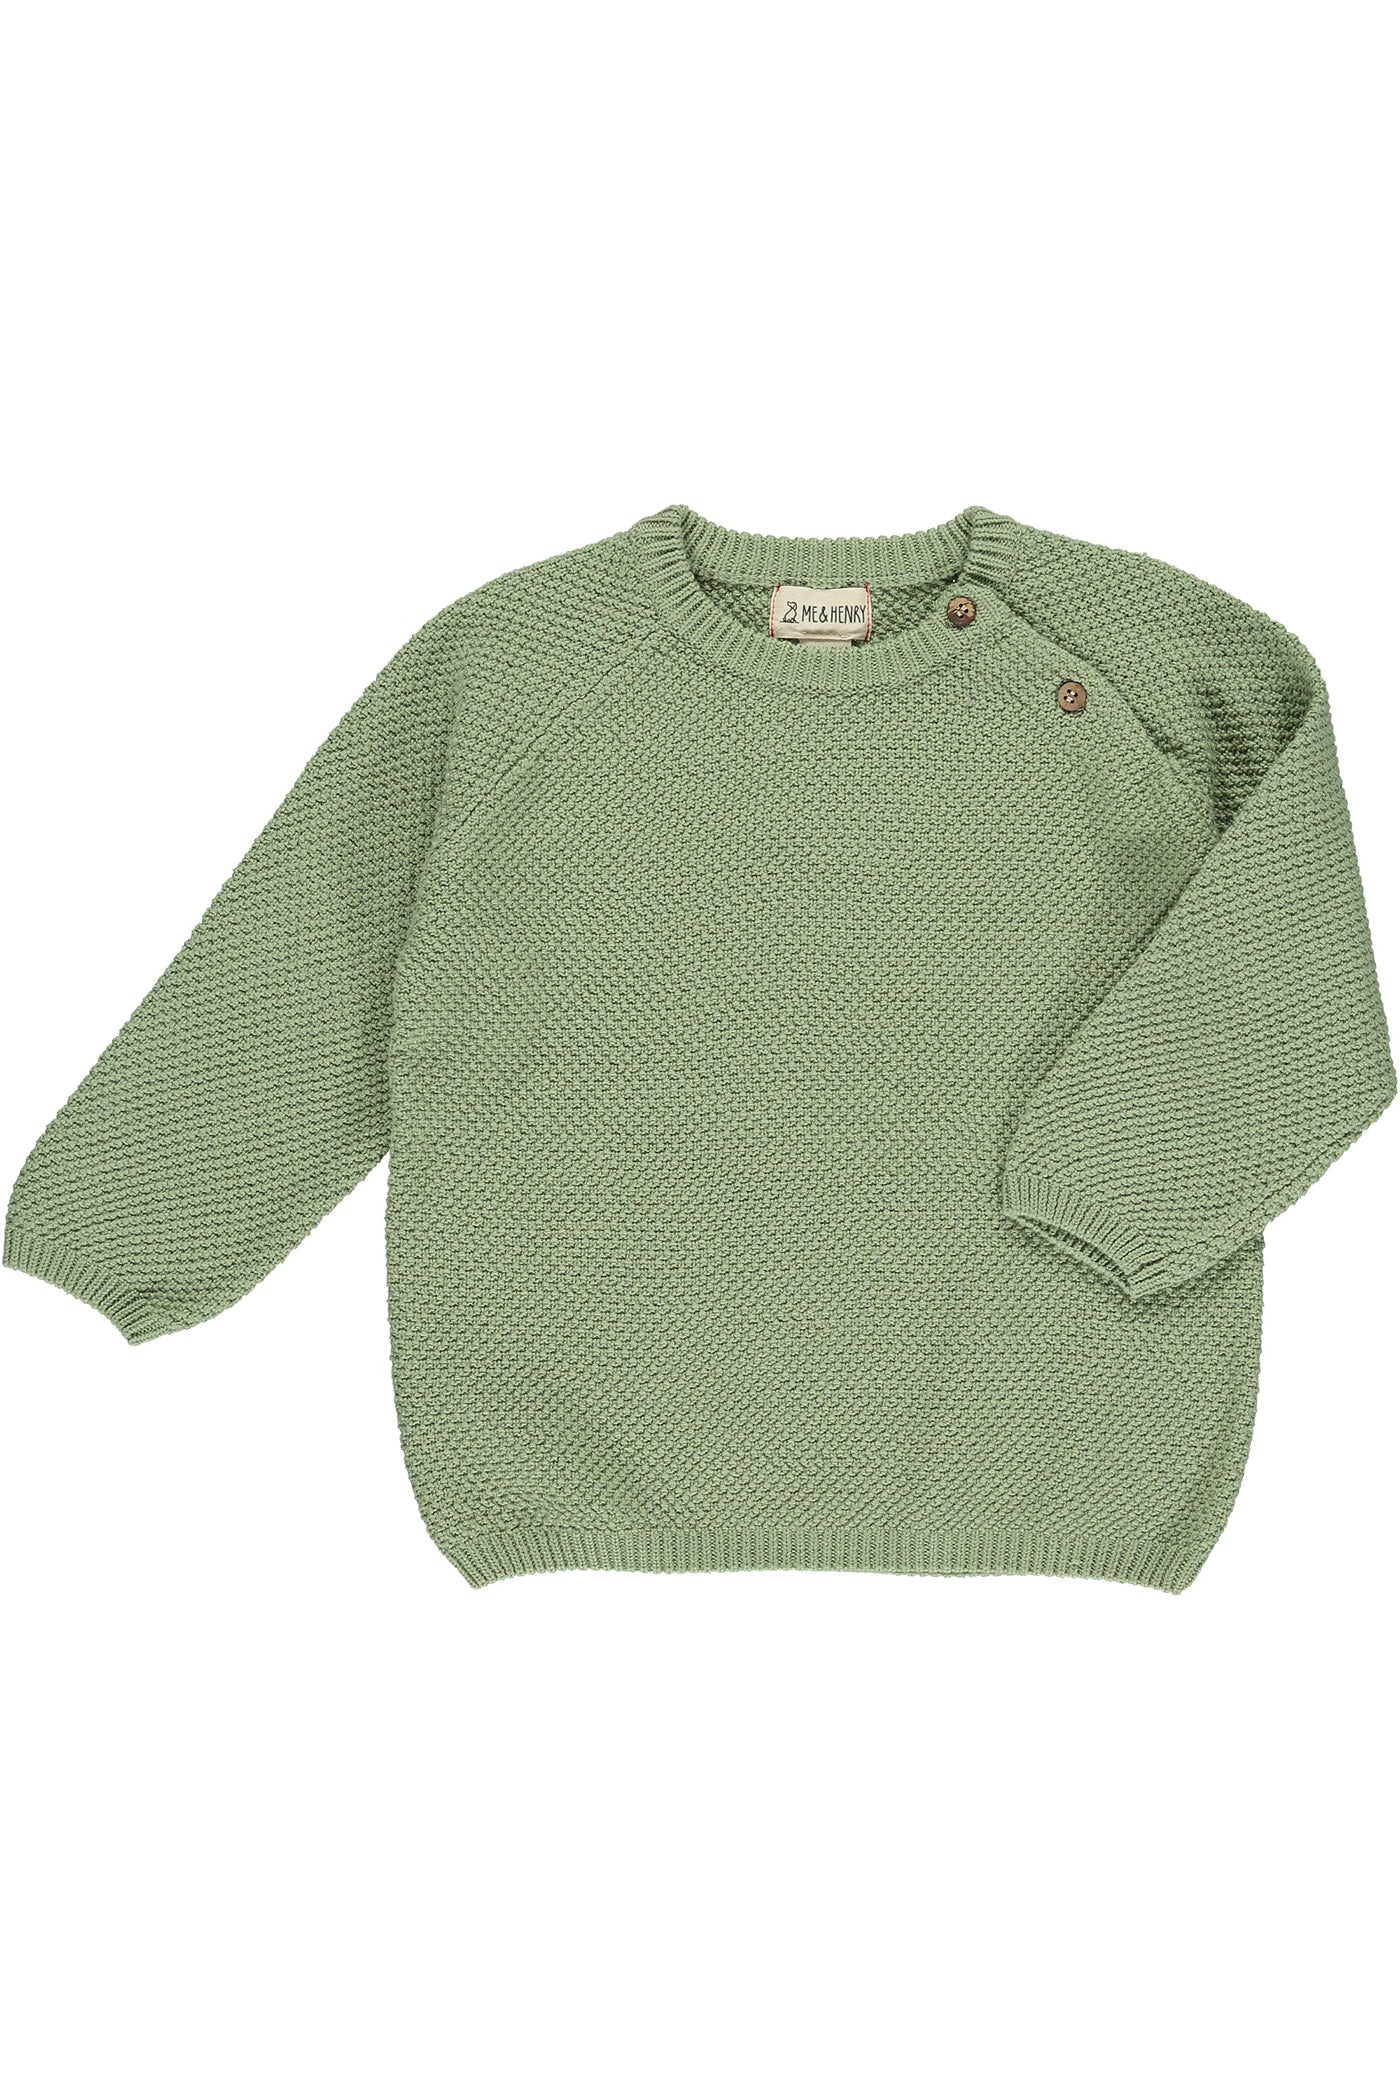 Roan Knit Kids Sweater